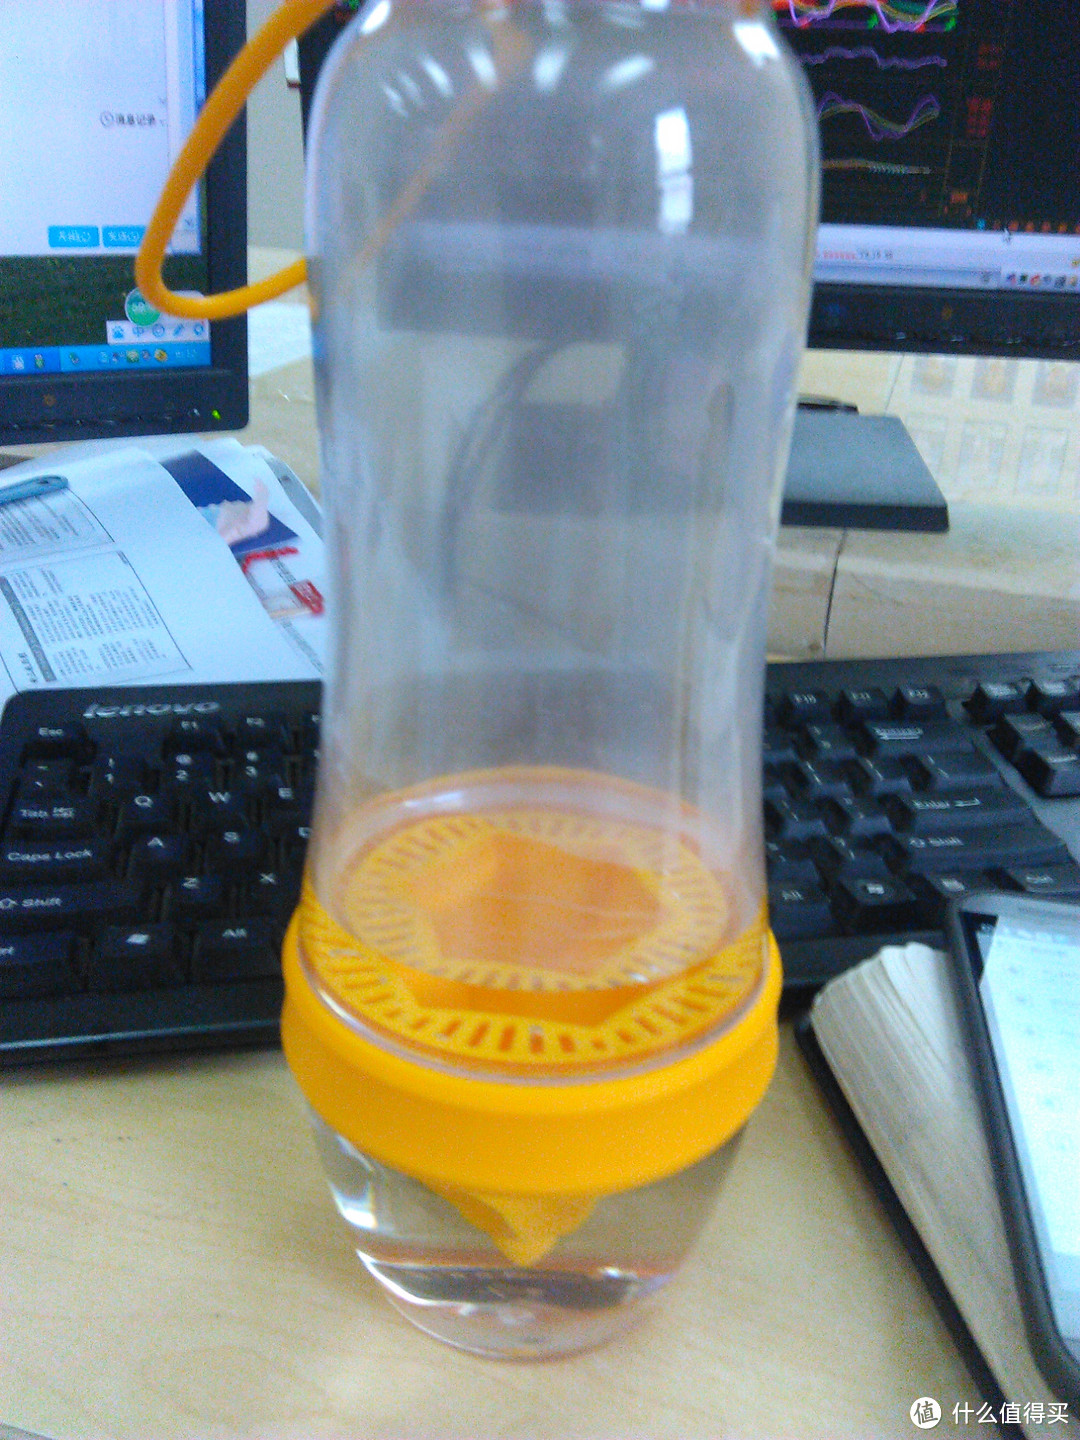 产自东莞的G罩杯——果意杯超级活力瓶！